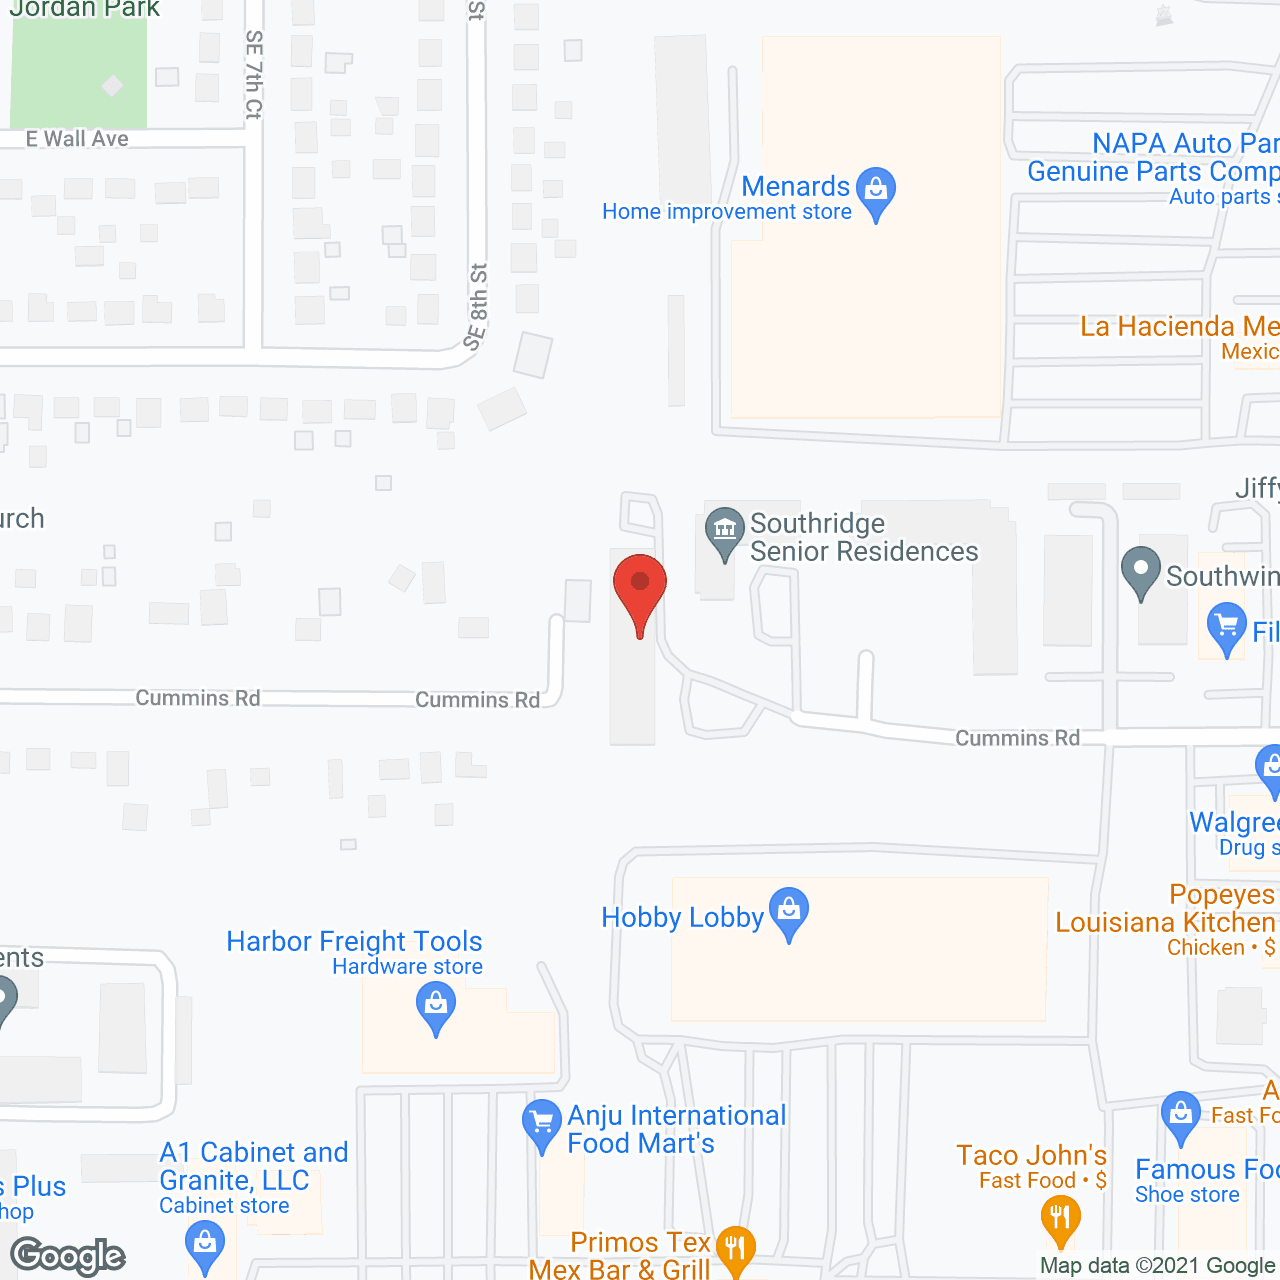 Cummins Village in google map